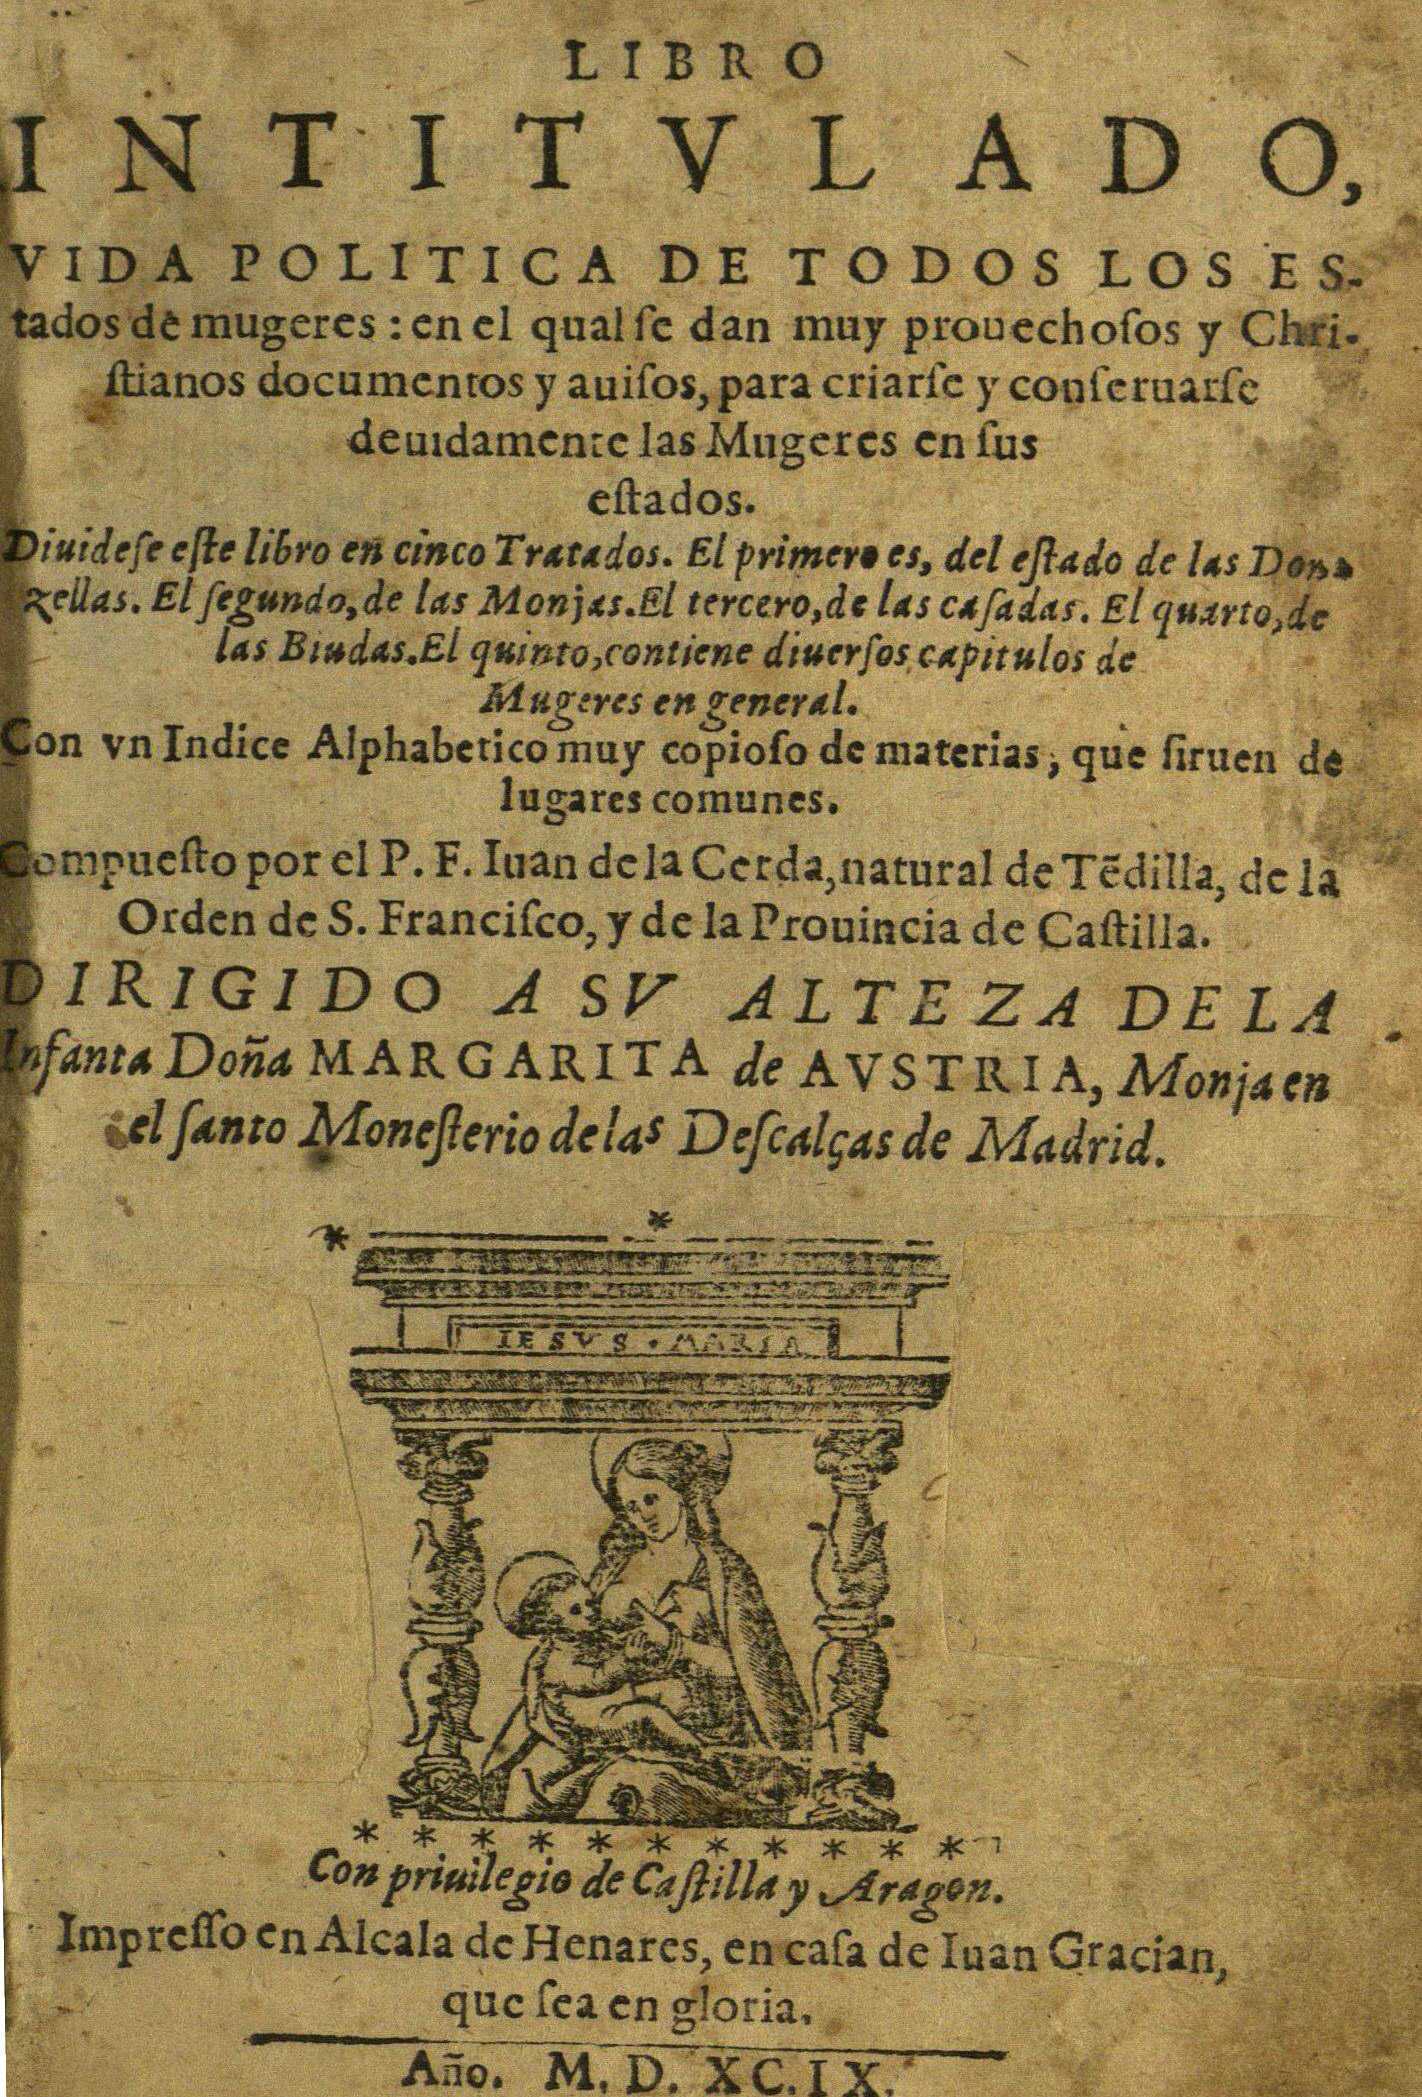 Libro intitulado vida politica de todos los estados de mugeres, 1599